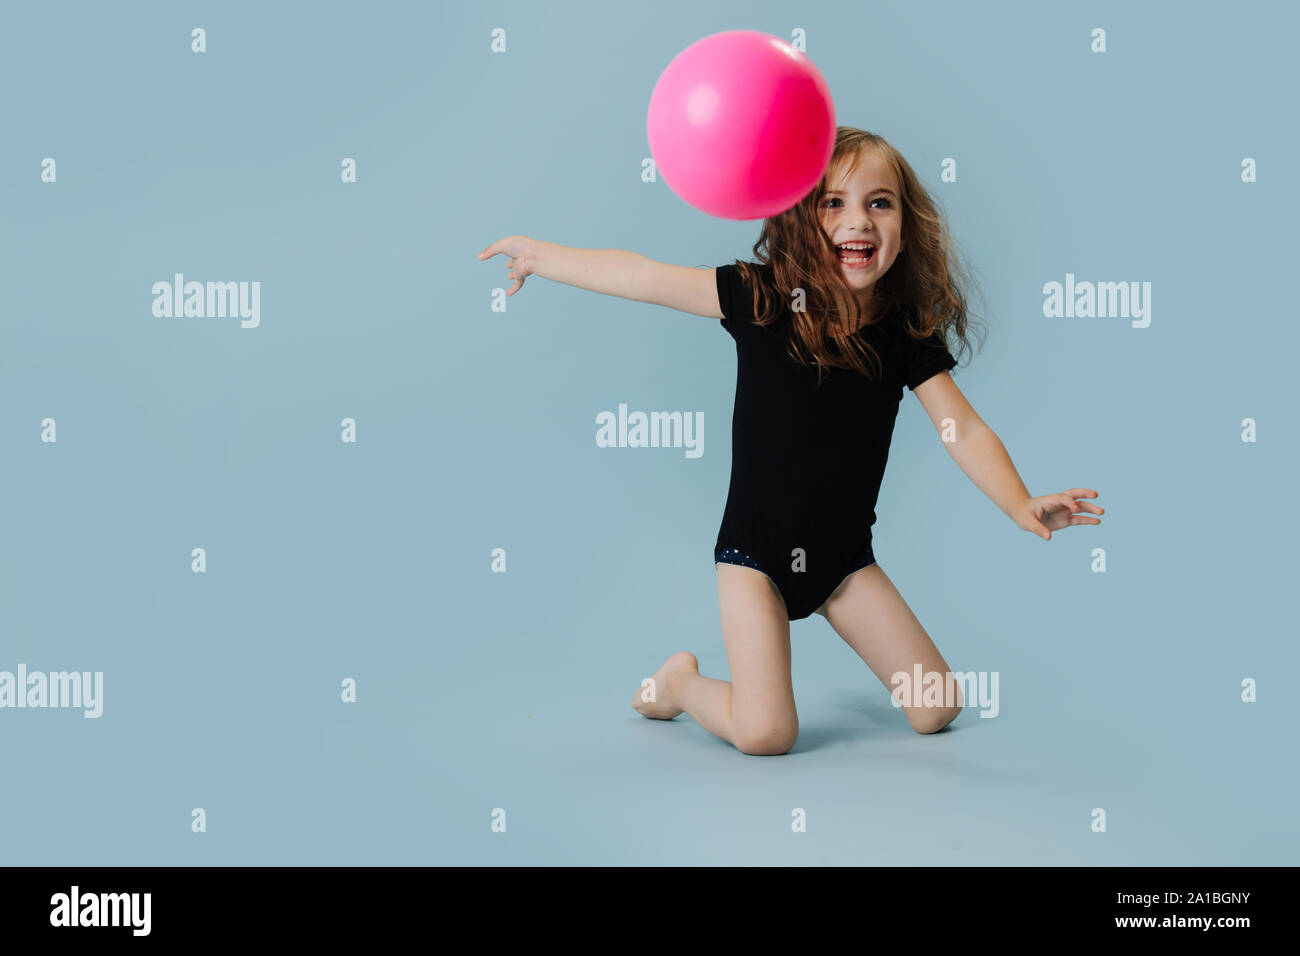 Kleines Mädchen in einem schwarzen Body mit rosa Gymnastikball über blauer Hintergrund Stockfoto